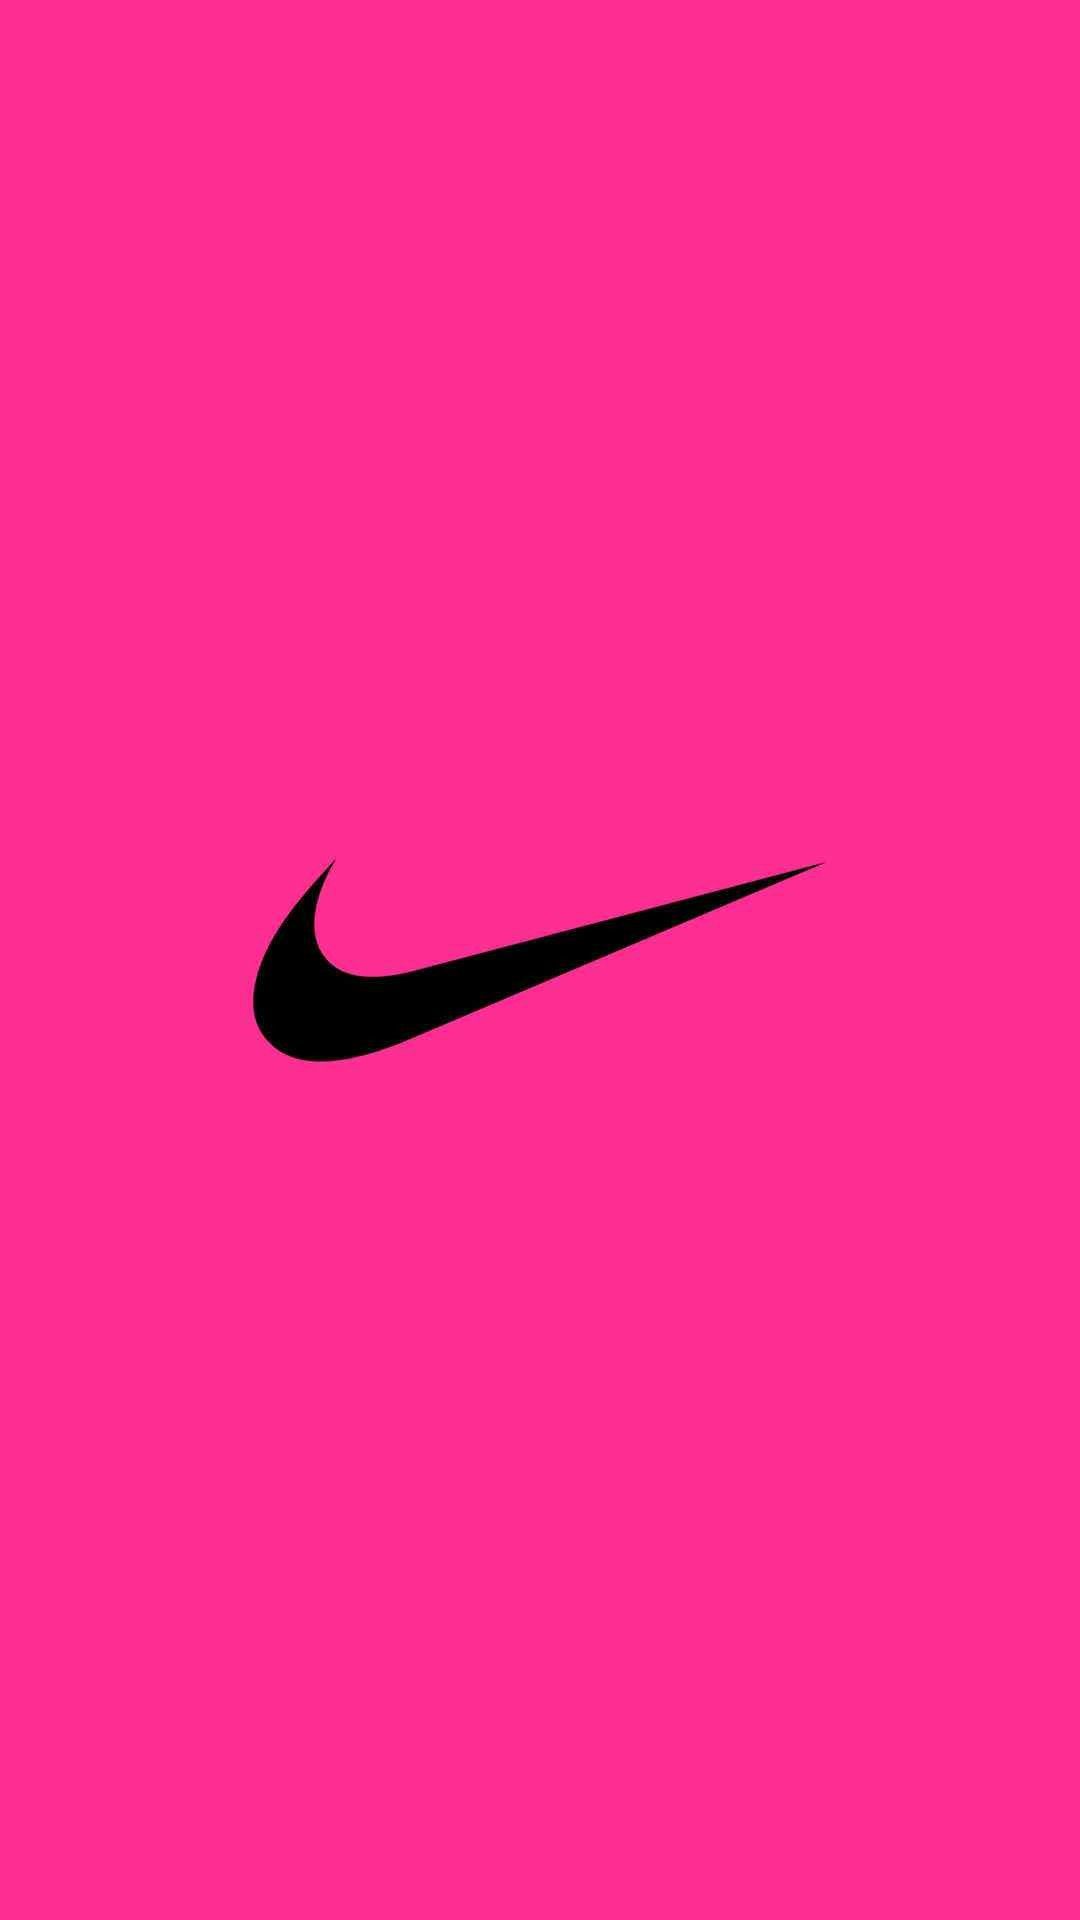 Pink Nike